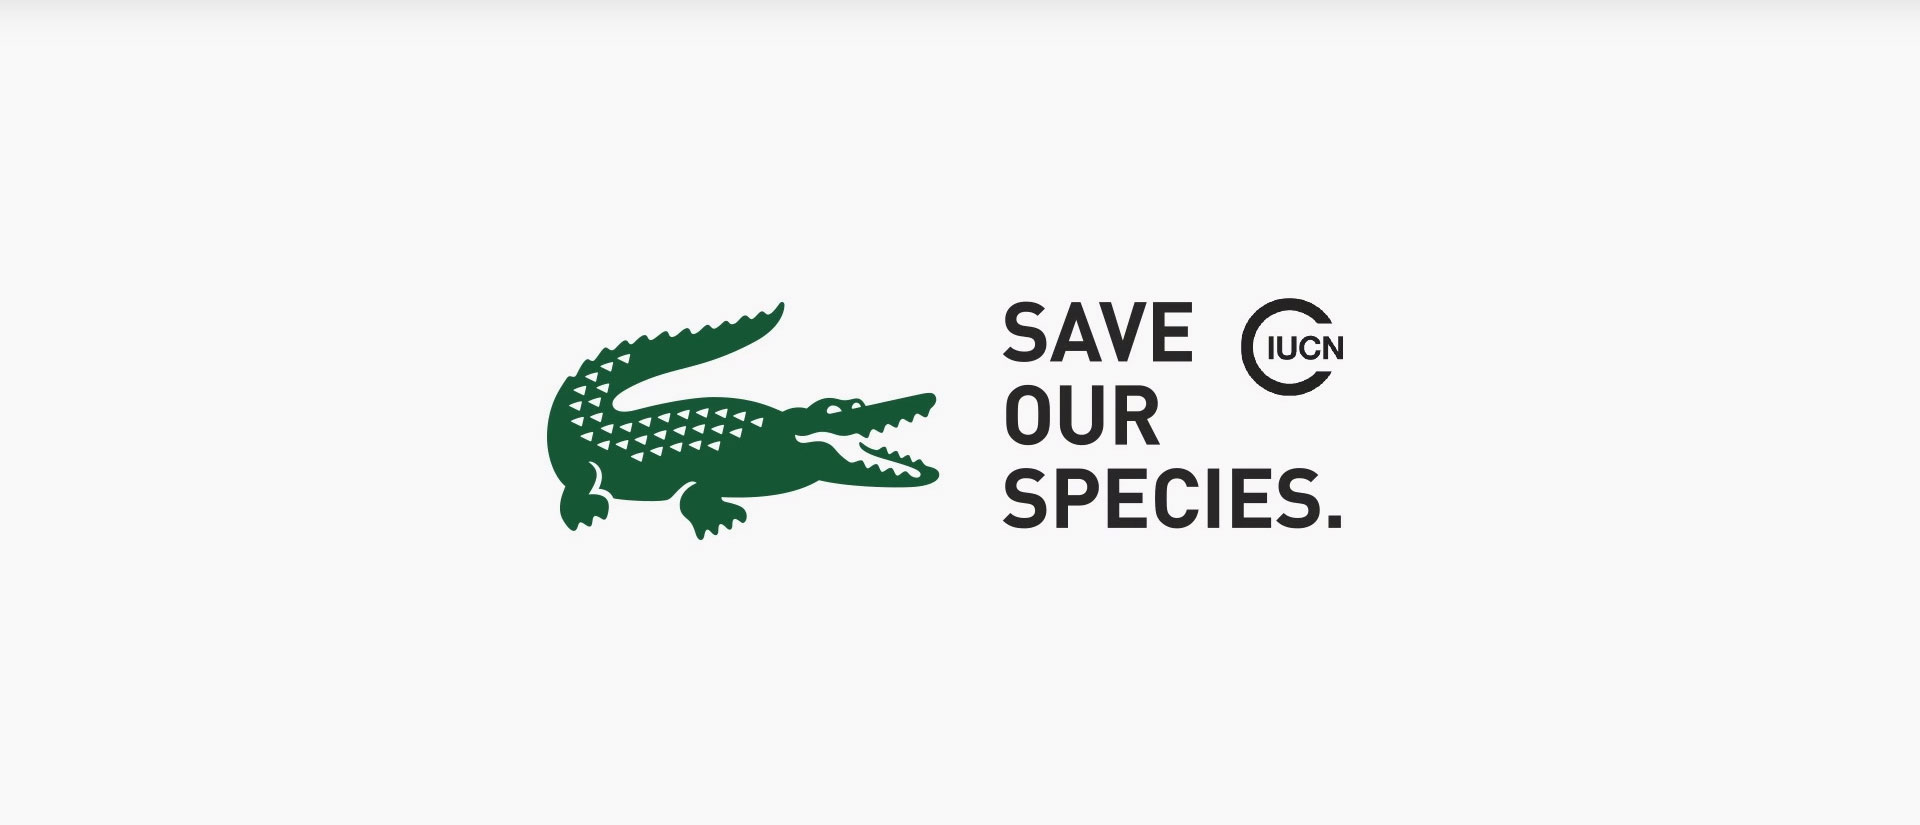 lacoste remplace son crocodile embl matique par 10 animaux en voie d extinction 7786